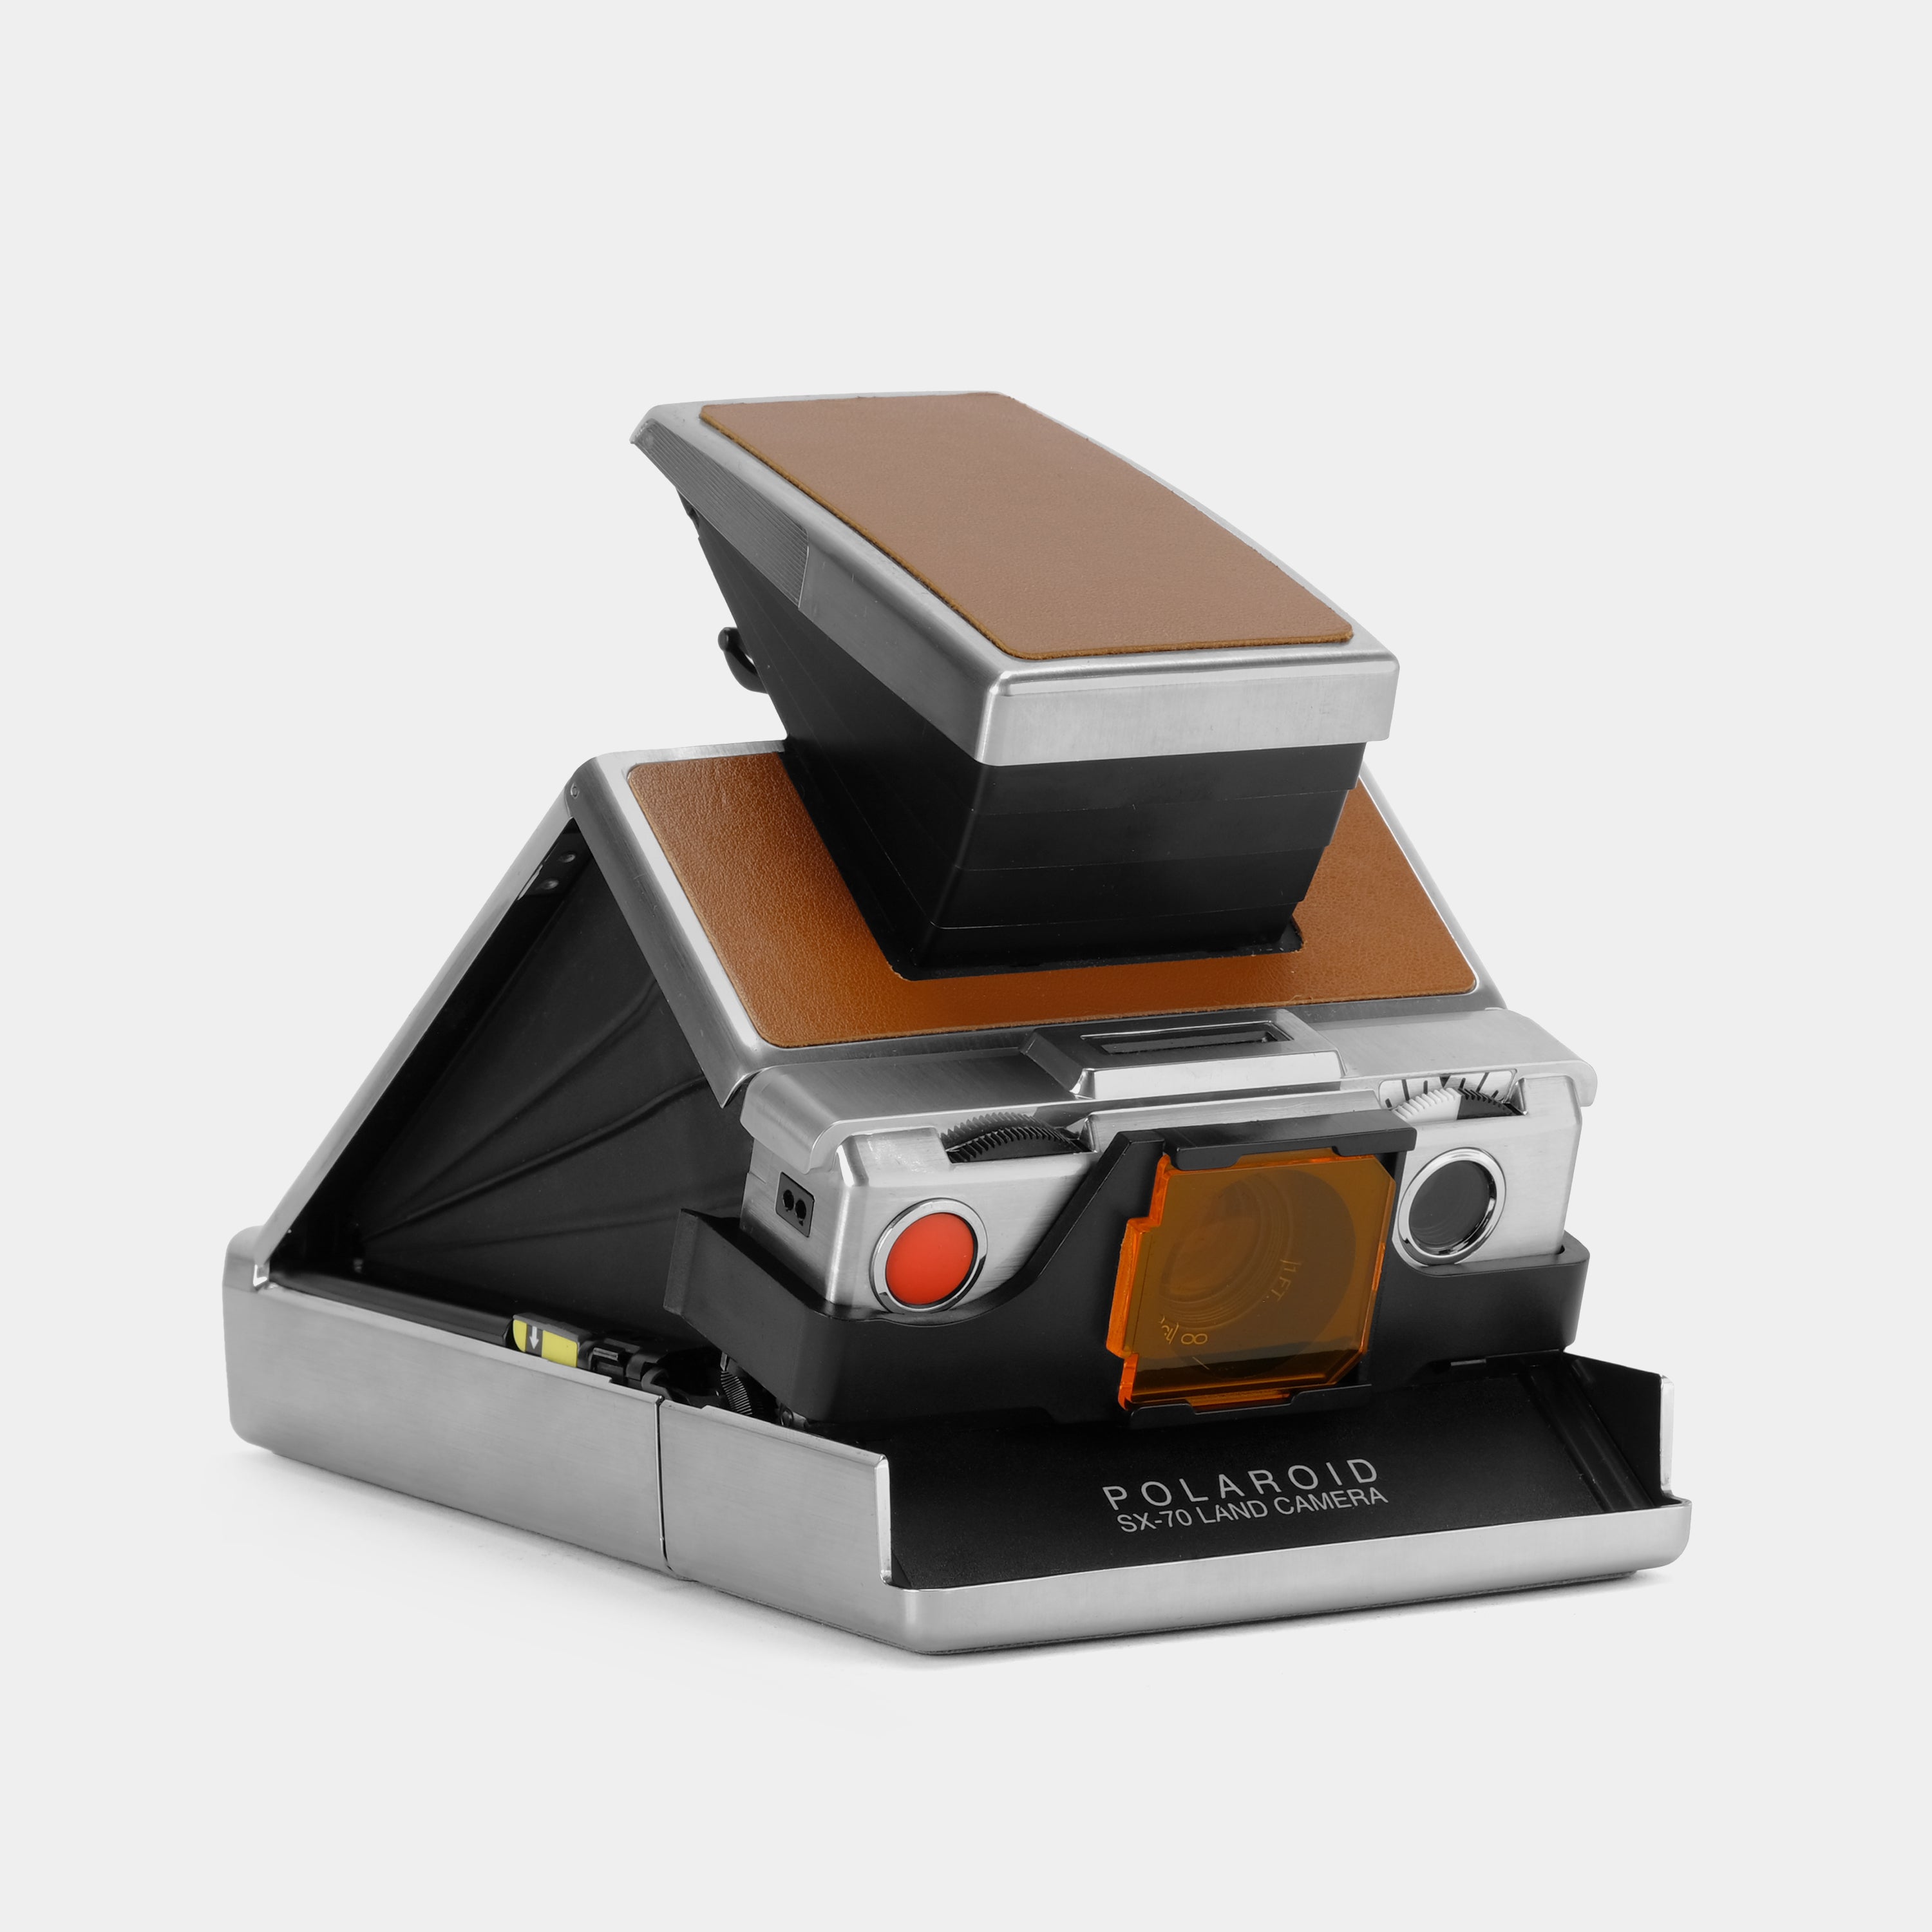 Polab SX-70 & SLR Type Instant Camera Filter Kit